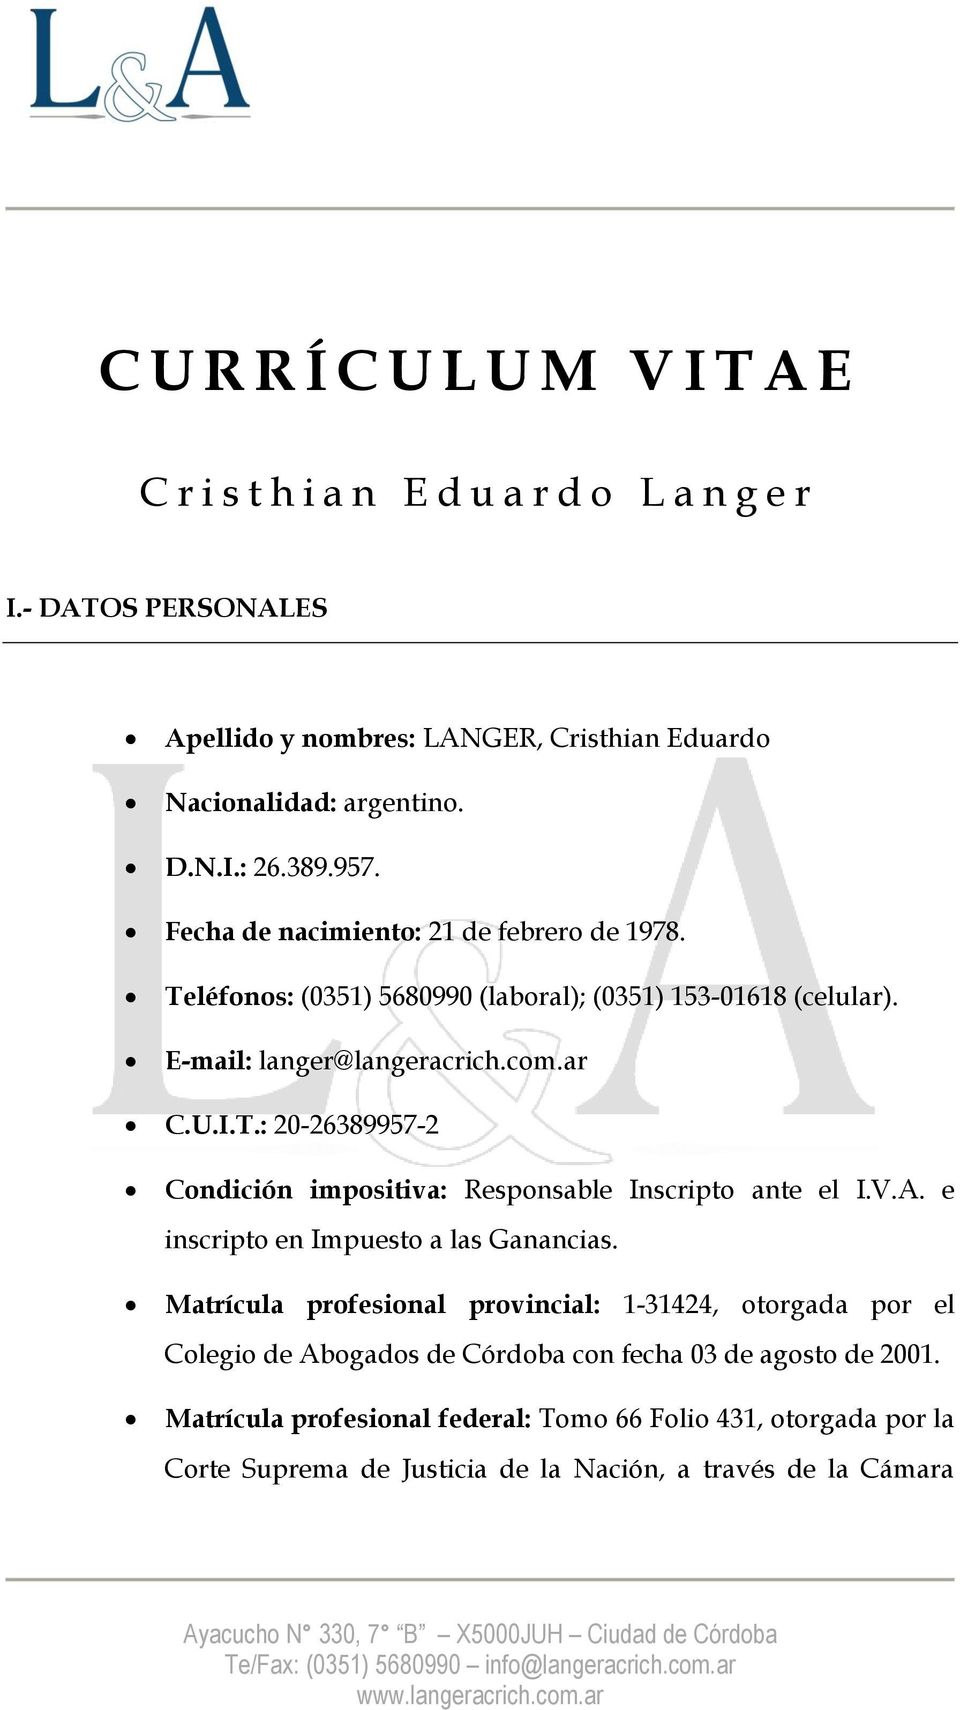 V.A. e inscripto en Impuesto a las Ganancias. Matrícula profesional provincial: 1-31424, otorgada por el Colegio de Abogados de Córdoba con fecha 03 de agosto de 2001.